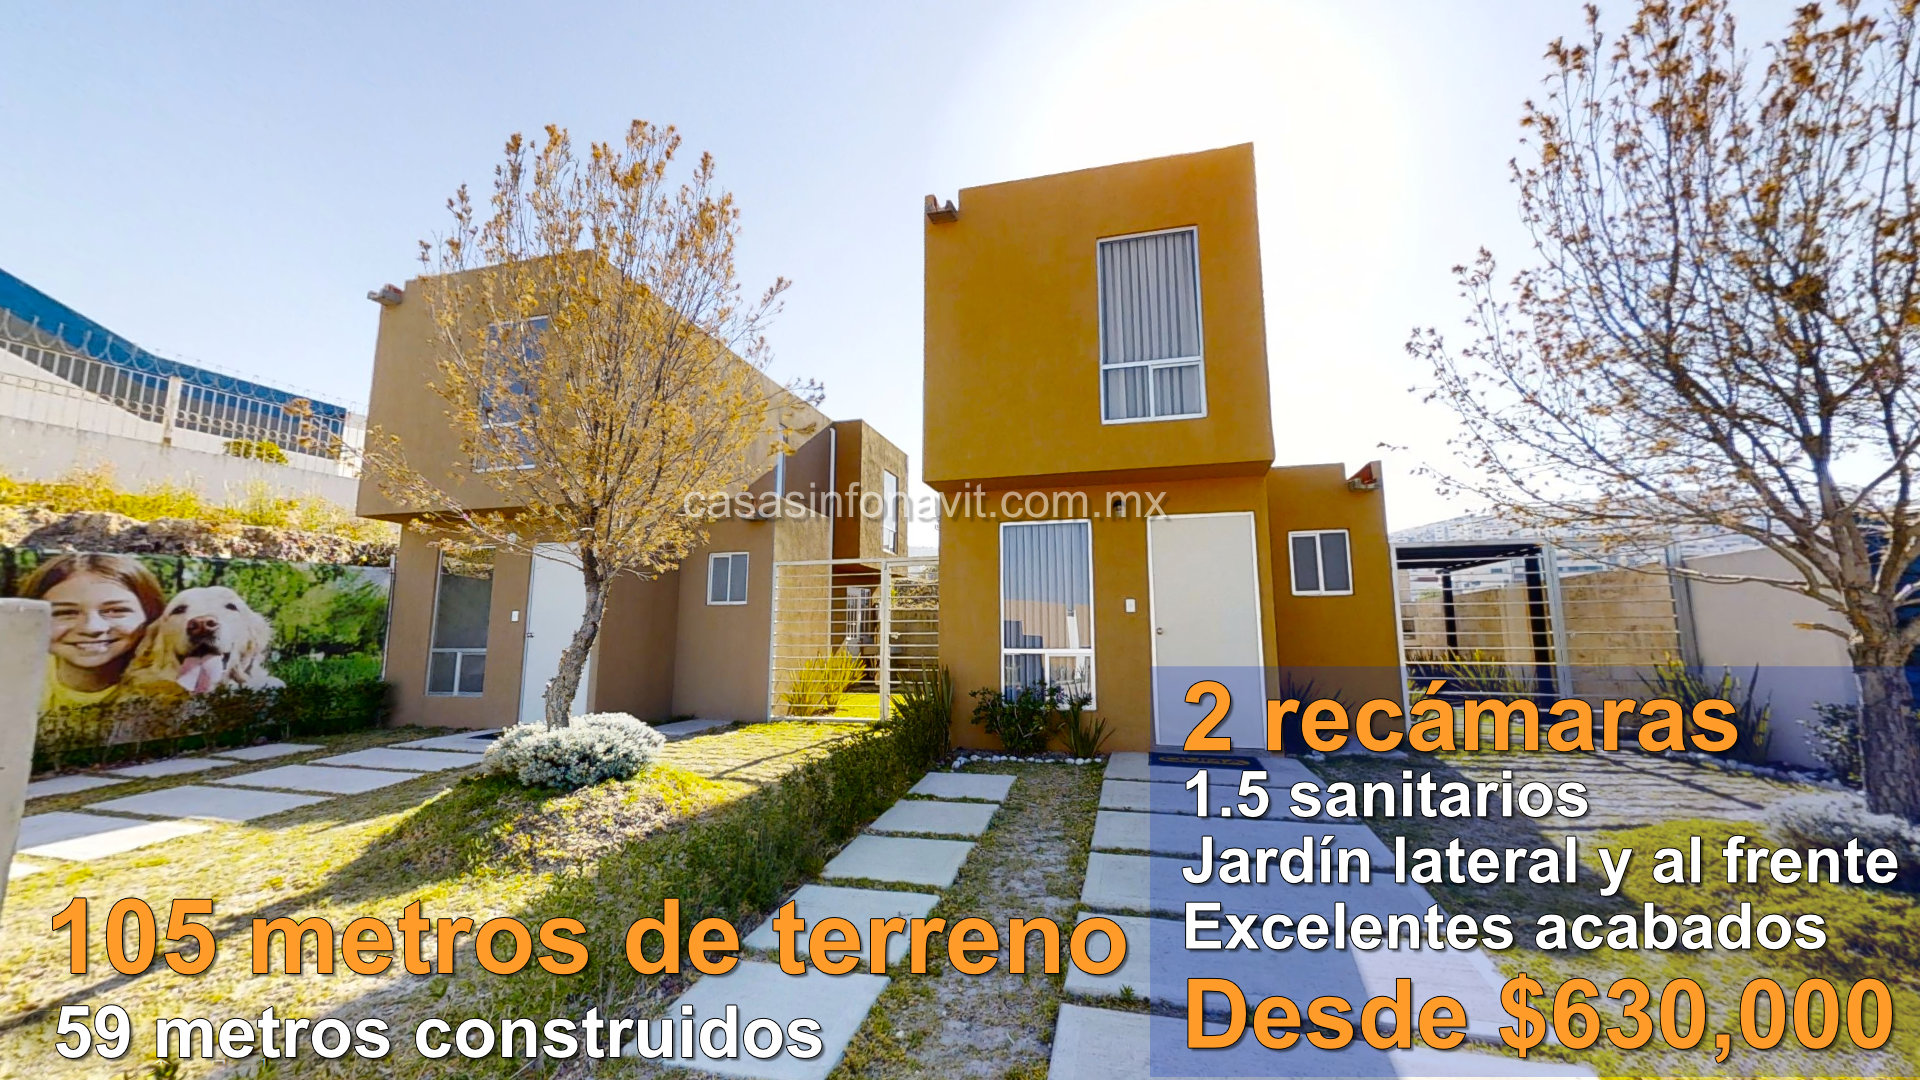 Casas en Morelos Infonavit - Casas en venta con crédito Infonavit